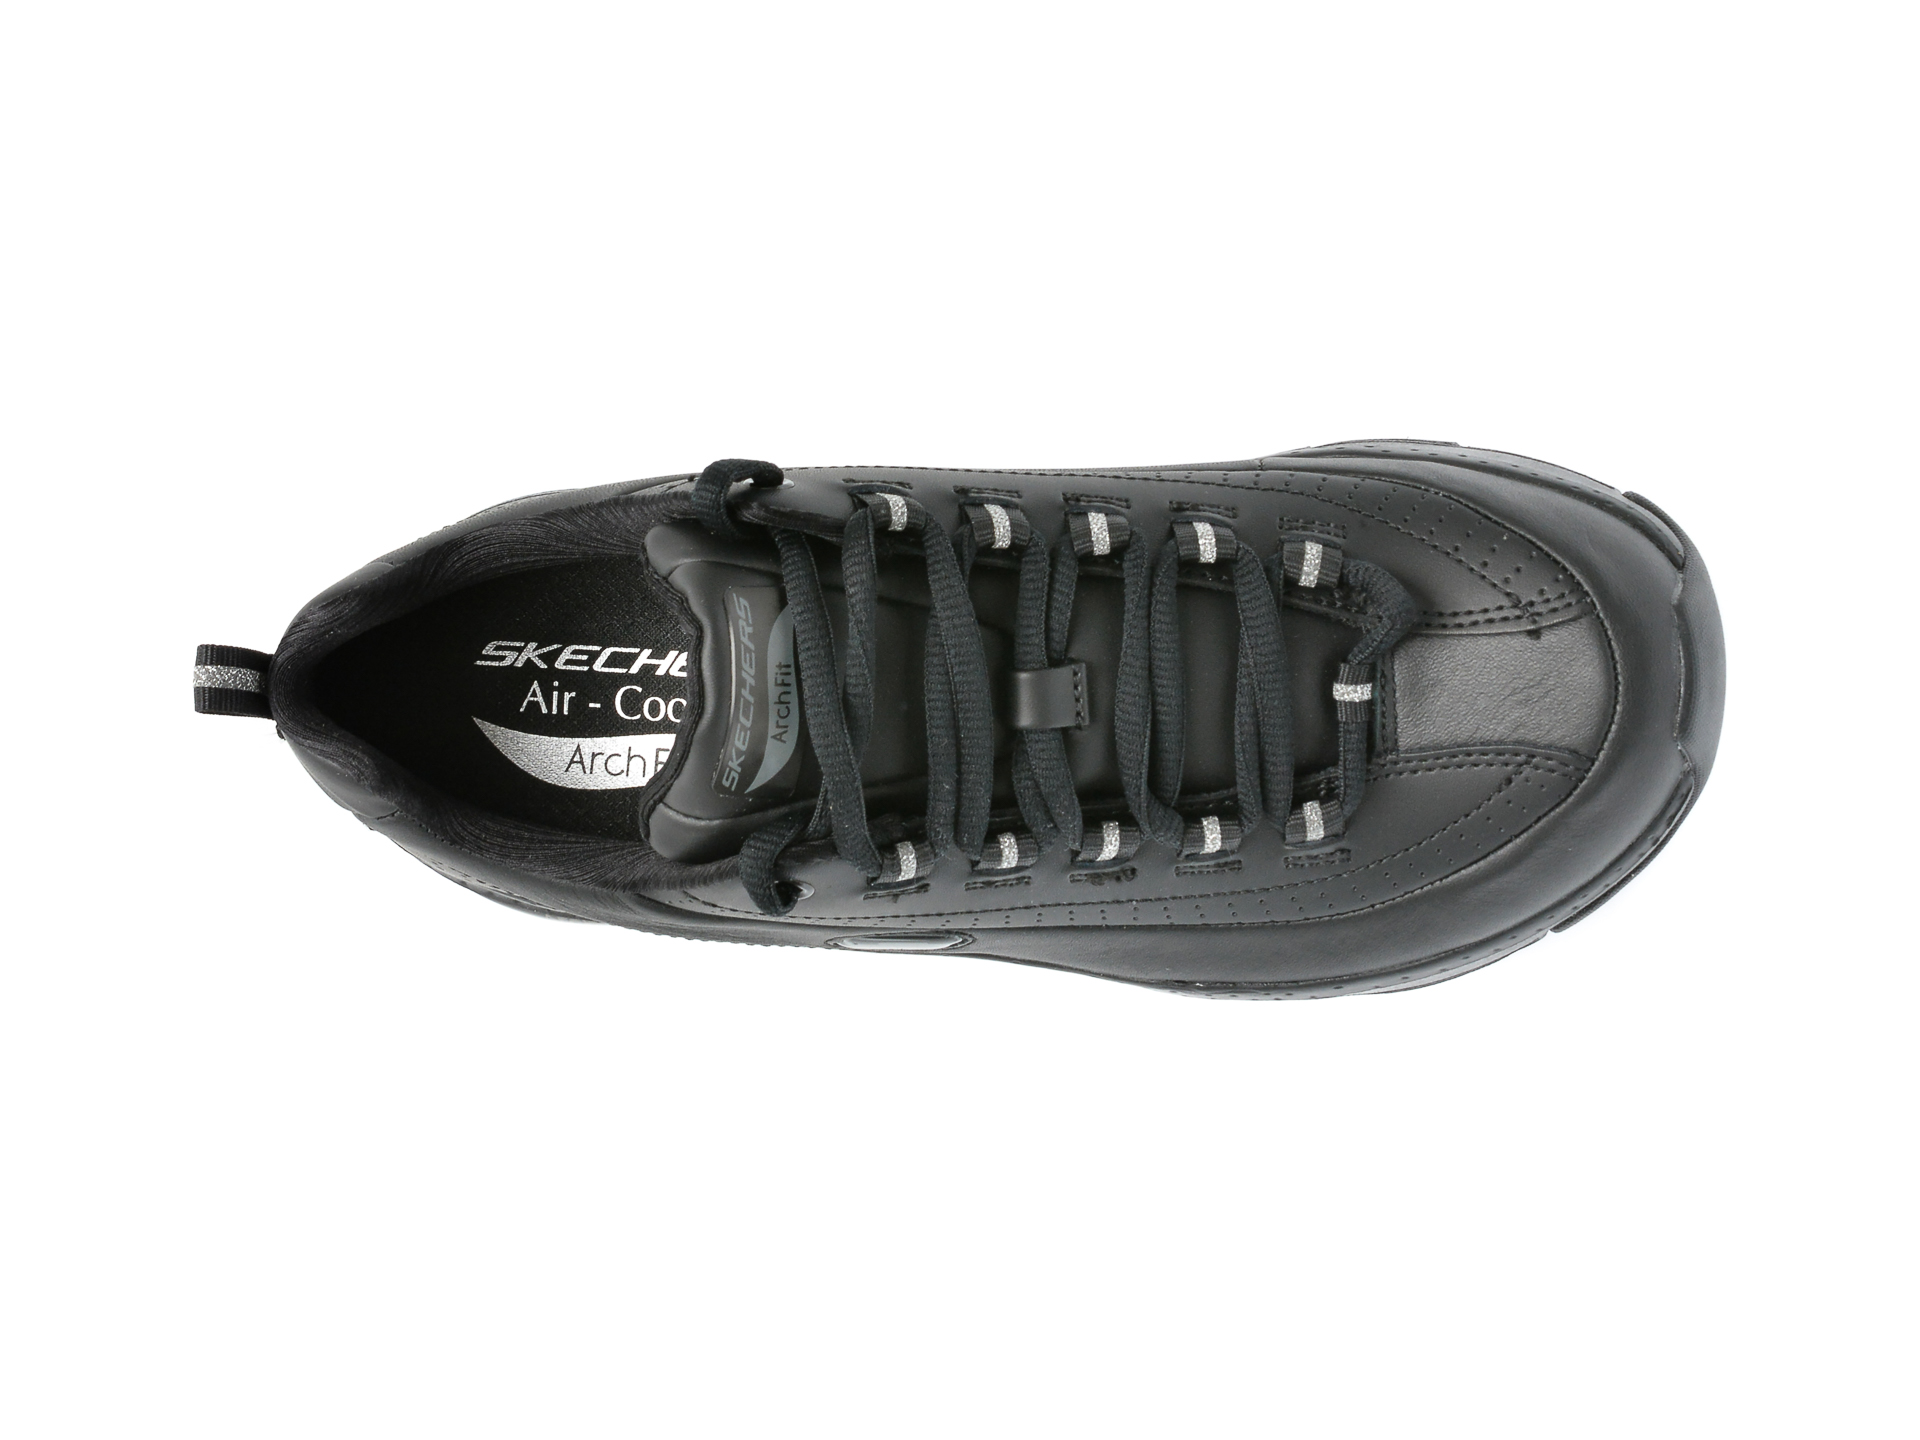 Poze Pantofi sport SKECHERS negri, ARCH FIT, din piele naturala Tezyo